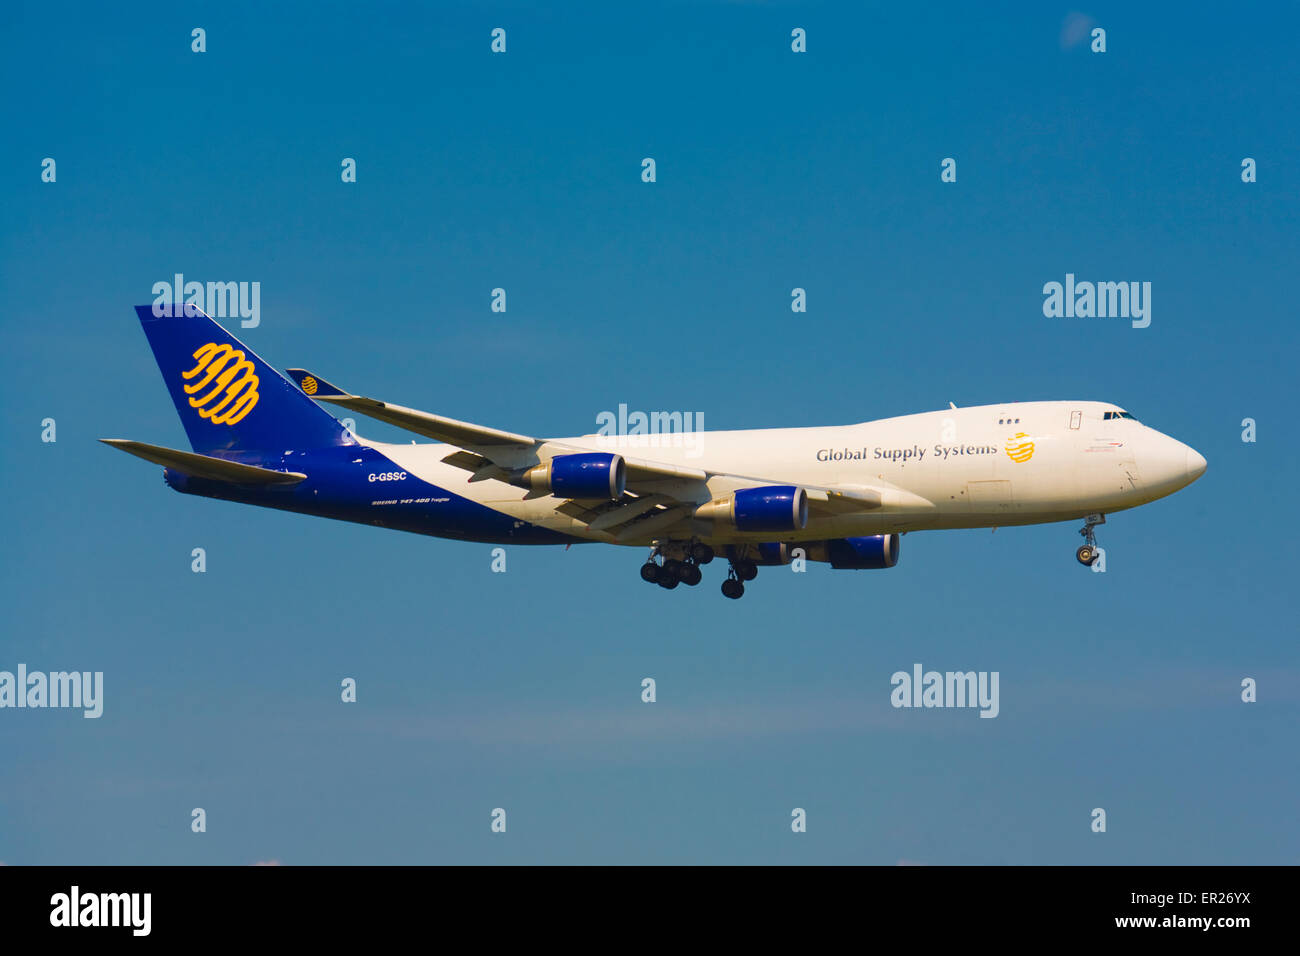 En Europa, Alemania, Colonia, enfoque para aterrizar en el aeropuerto de Colonia Bonn, Boeing 747 de la aerolínea de carga de los sistemas de suministro global. Foto de stock